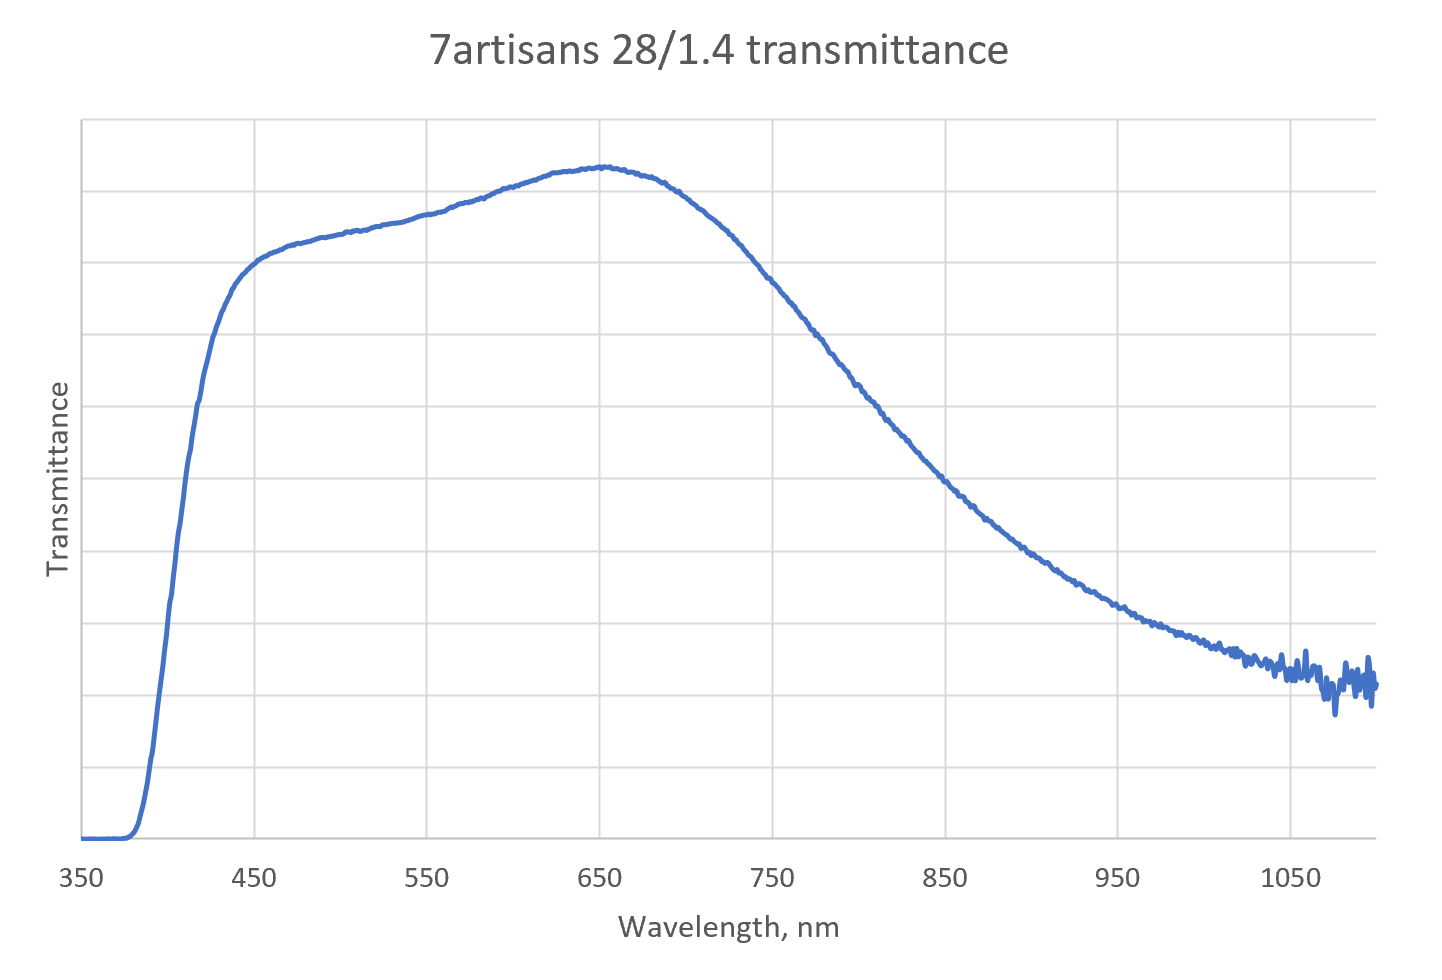 Transmissiespectrum van de 7artisans 28/1.4 lens. Vergelijk met Ultron 21/1.8 transmissiespectrum